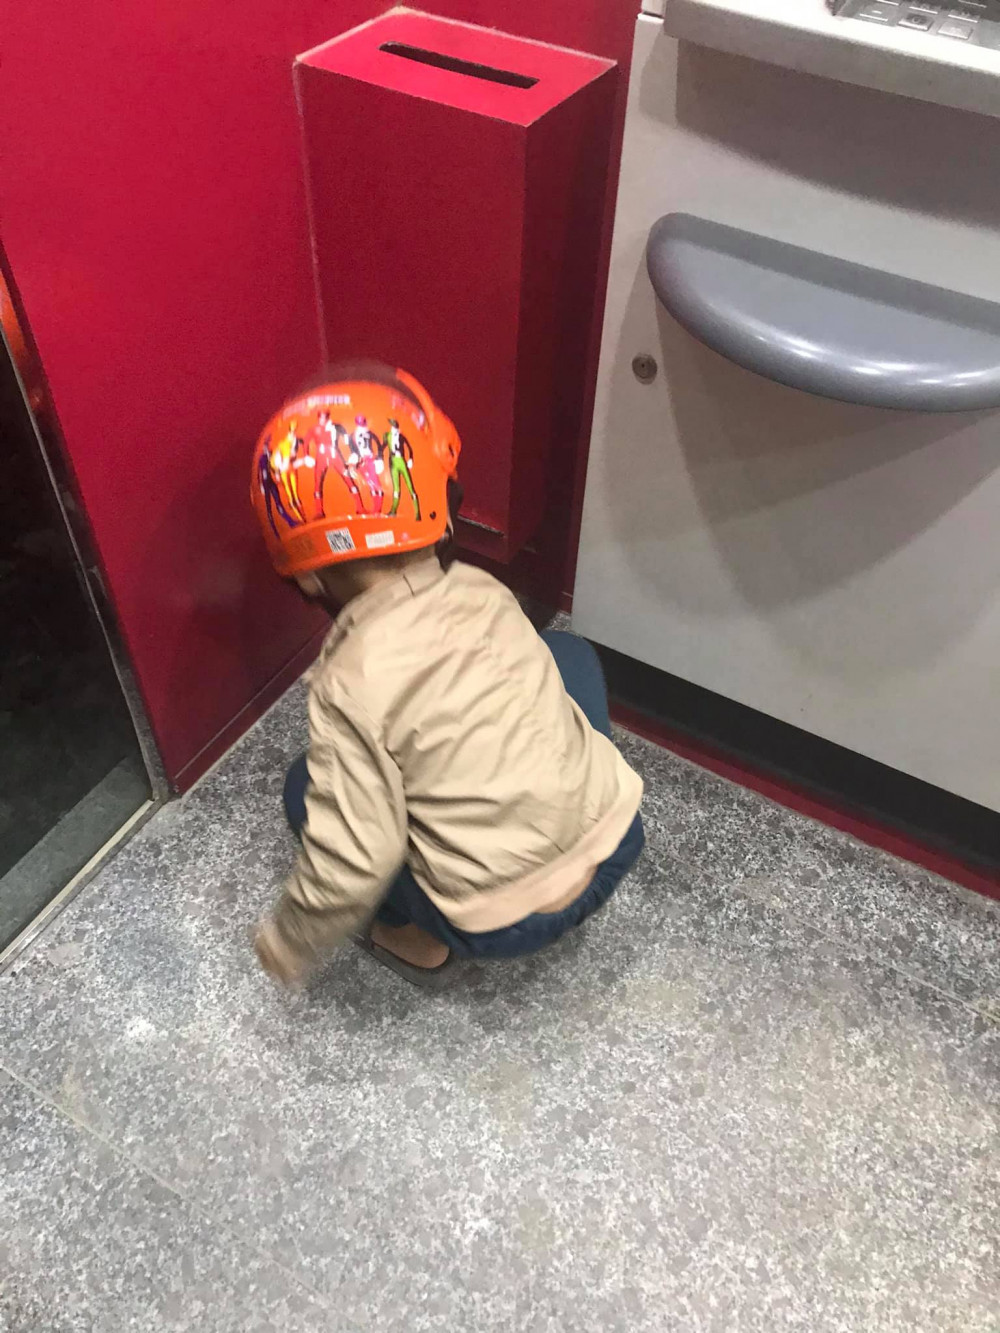 Cậu bé loay hoay nhặt những tờ biên lai dưới sàn ở một máy ATM. Ảnh từ Facebook